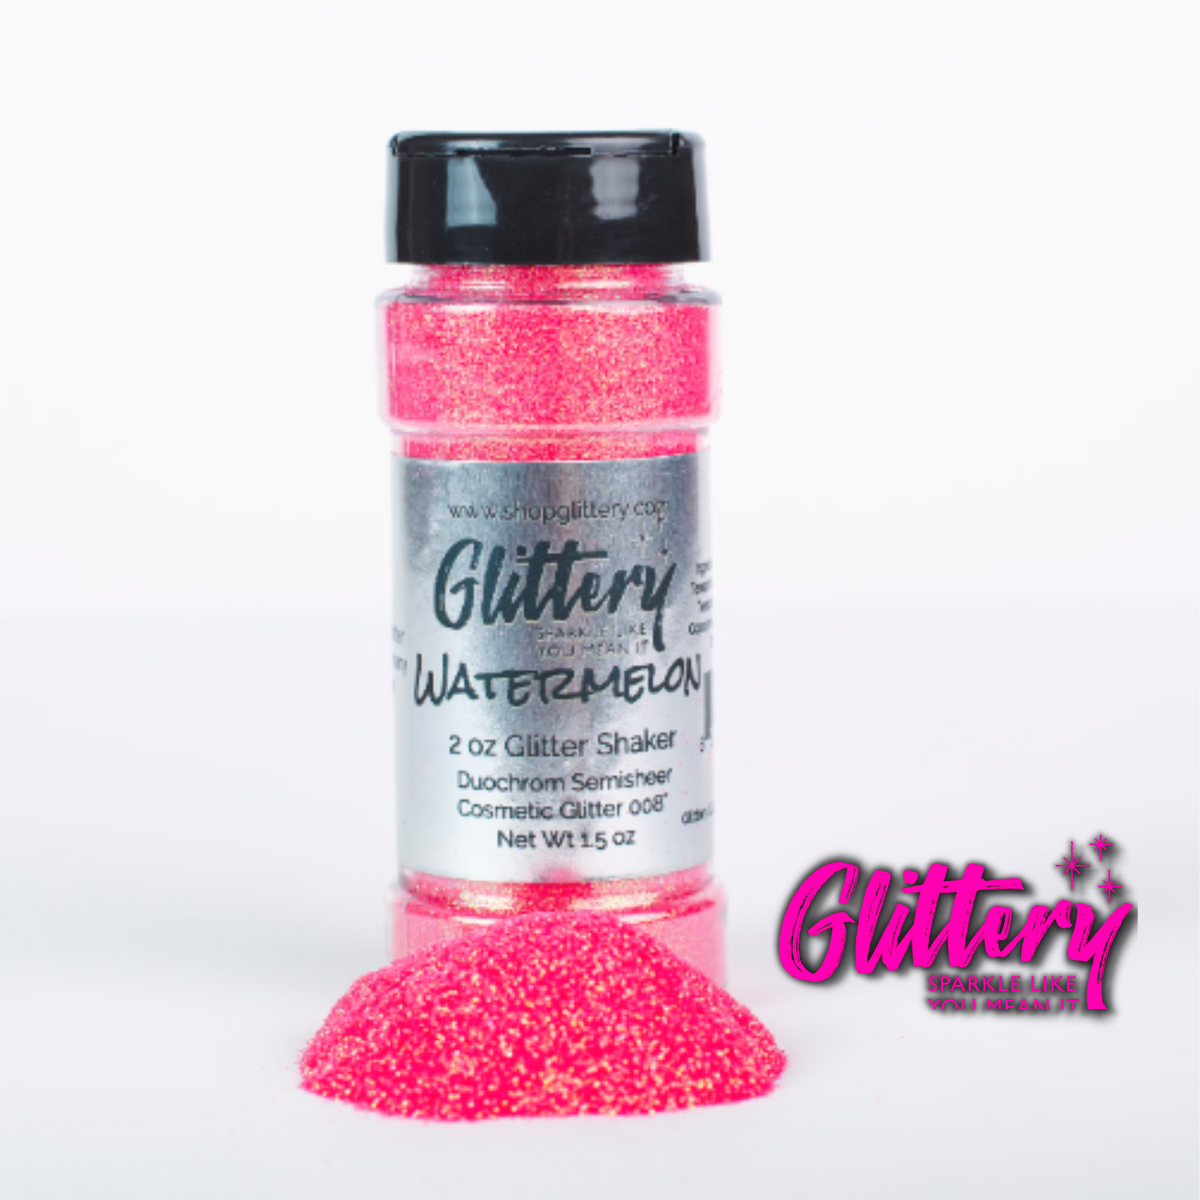 Watermelon Glitter, Cosmetic Grade, 1 oz Glitter, .008 Ultrafine